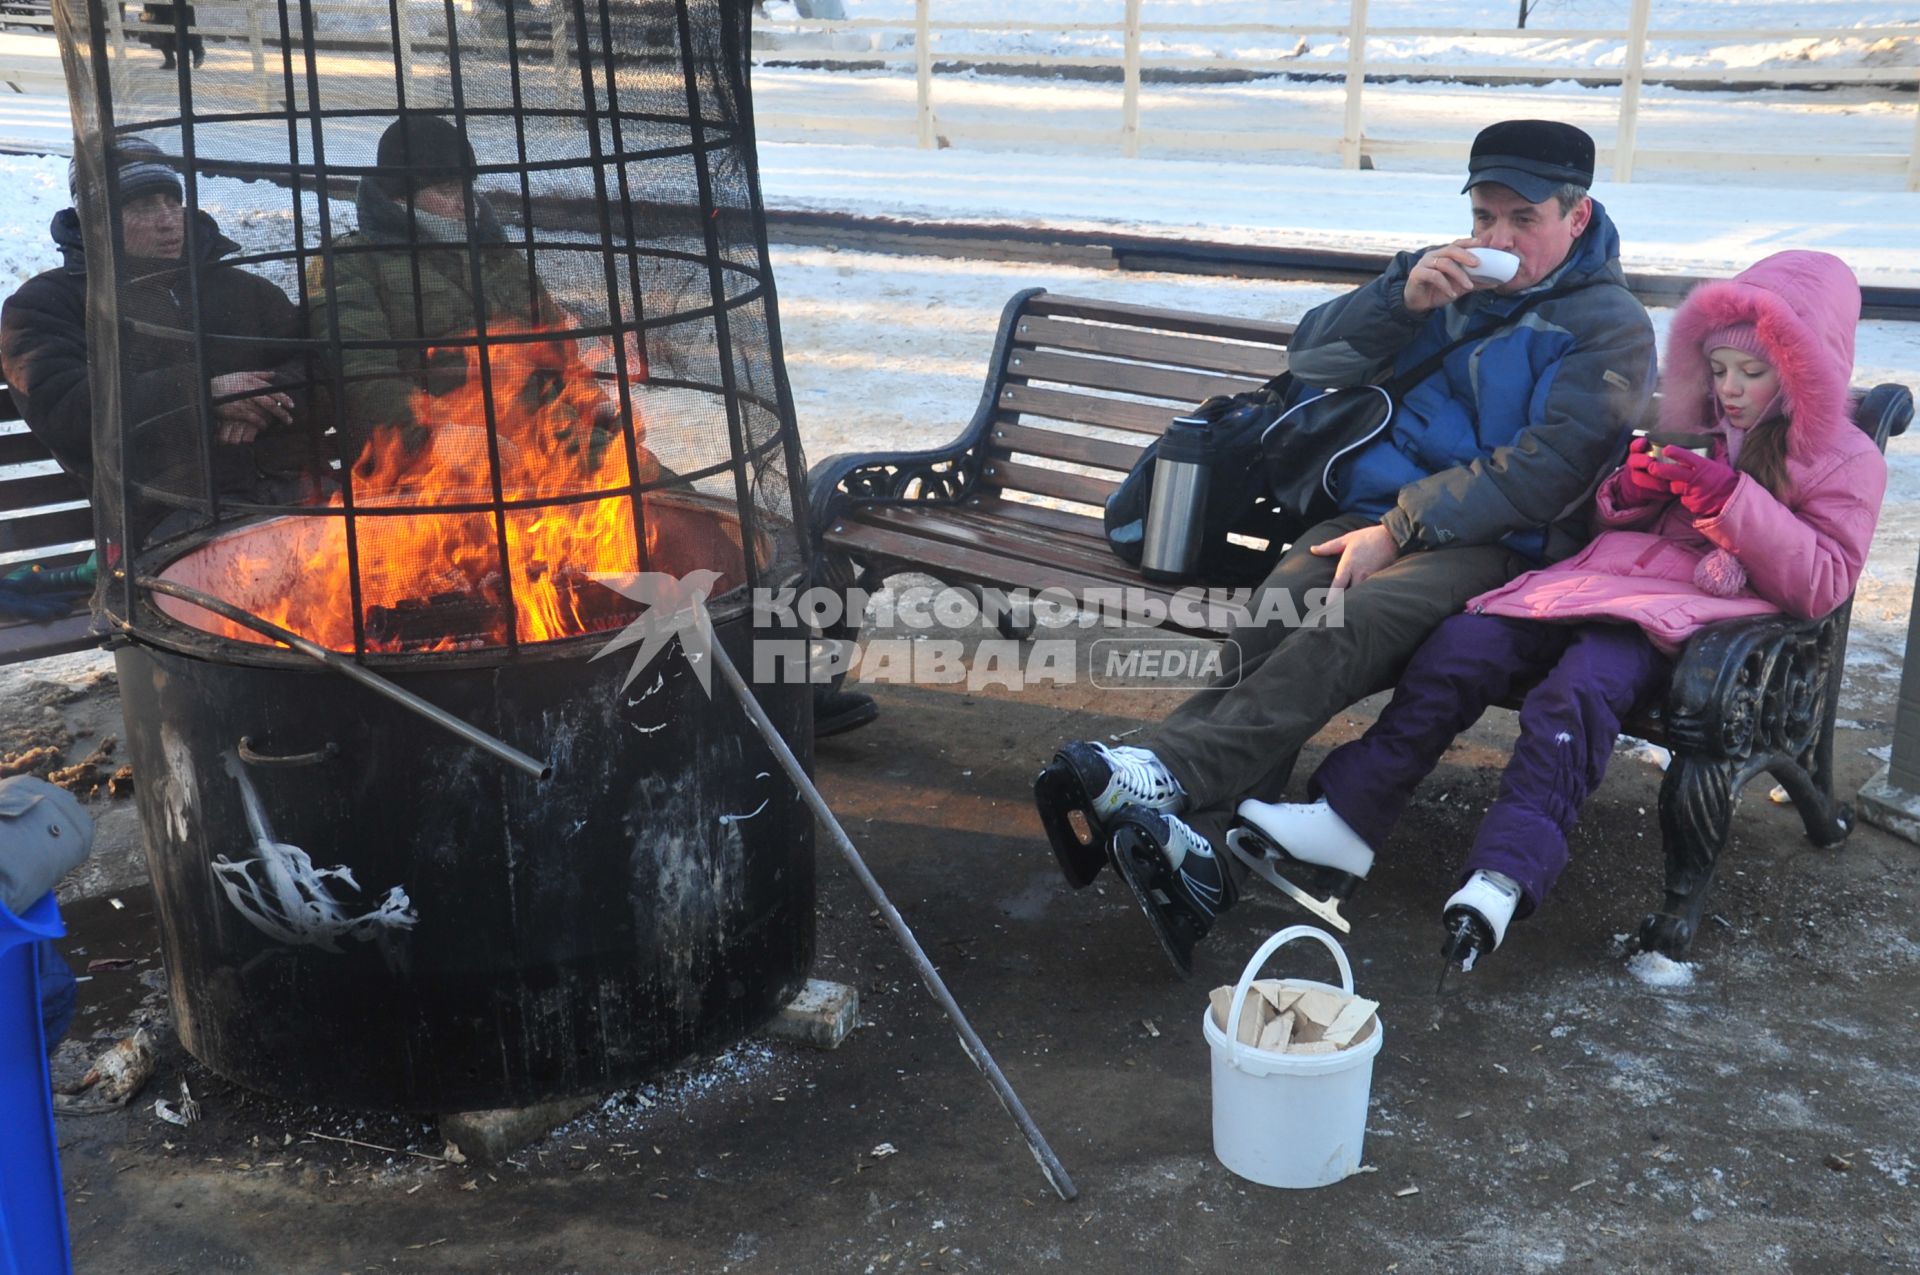 Парк Соколники. Каток `Лед`. На снимке: посетители катка согреваются у огня.